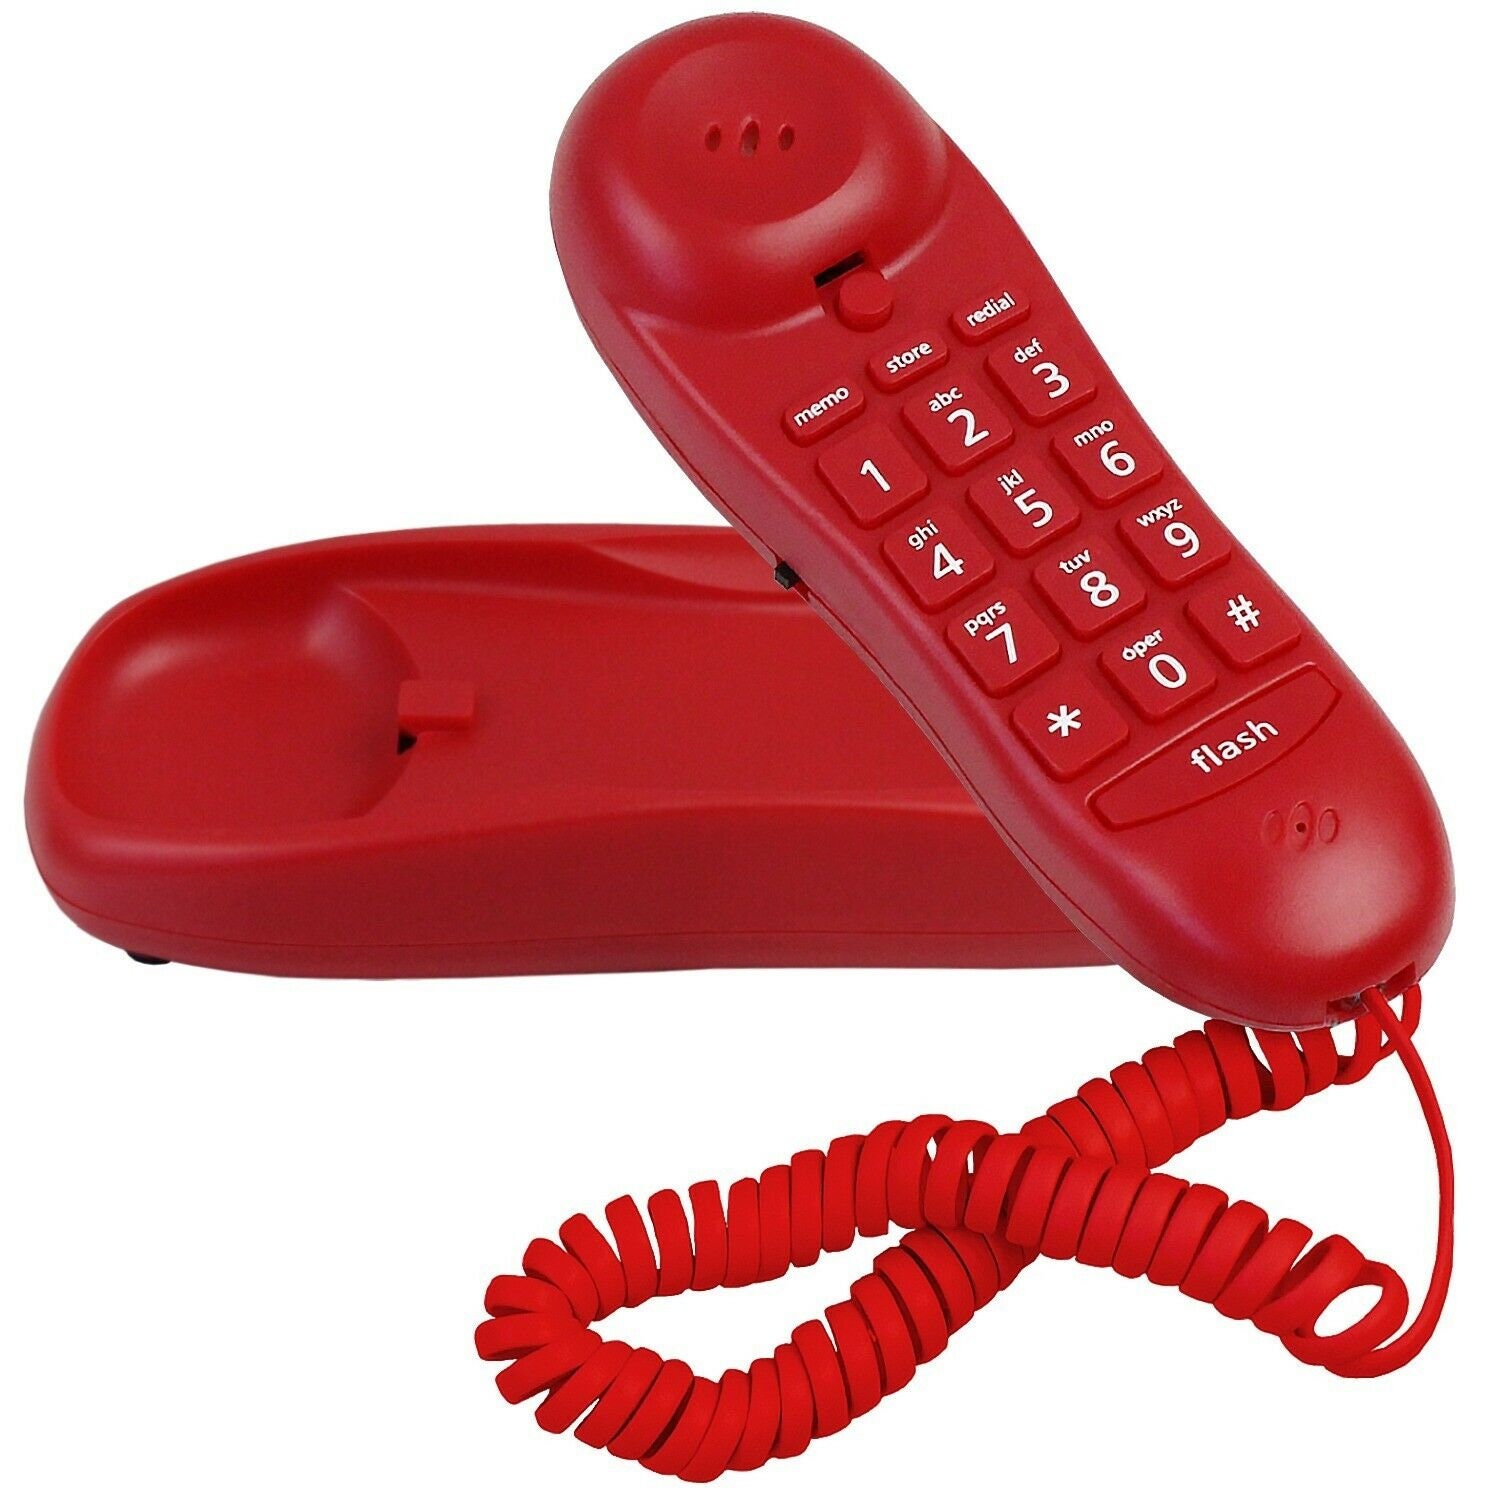 M12 телефон. Современный телефон трубка Deluxe Slimline. Игрушка телефон кнопочный фиолетовый. Телефон 60 11